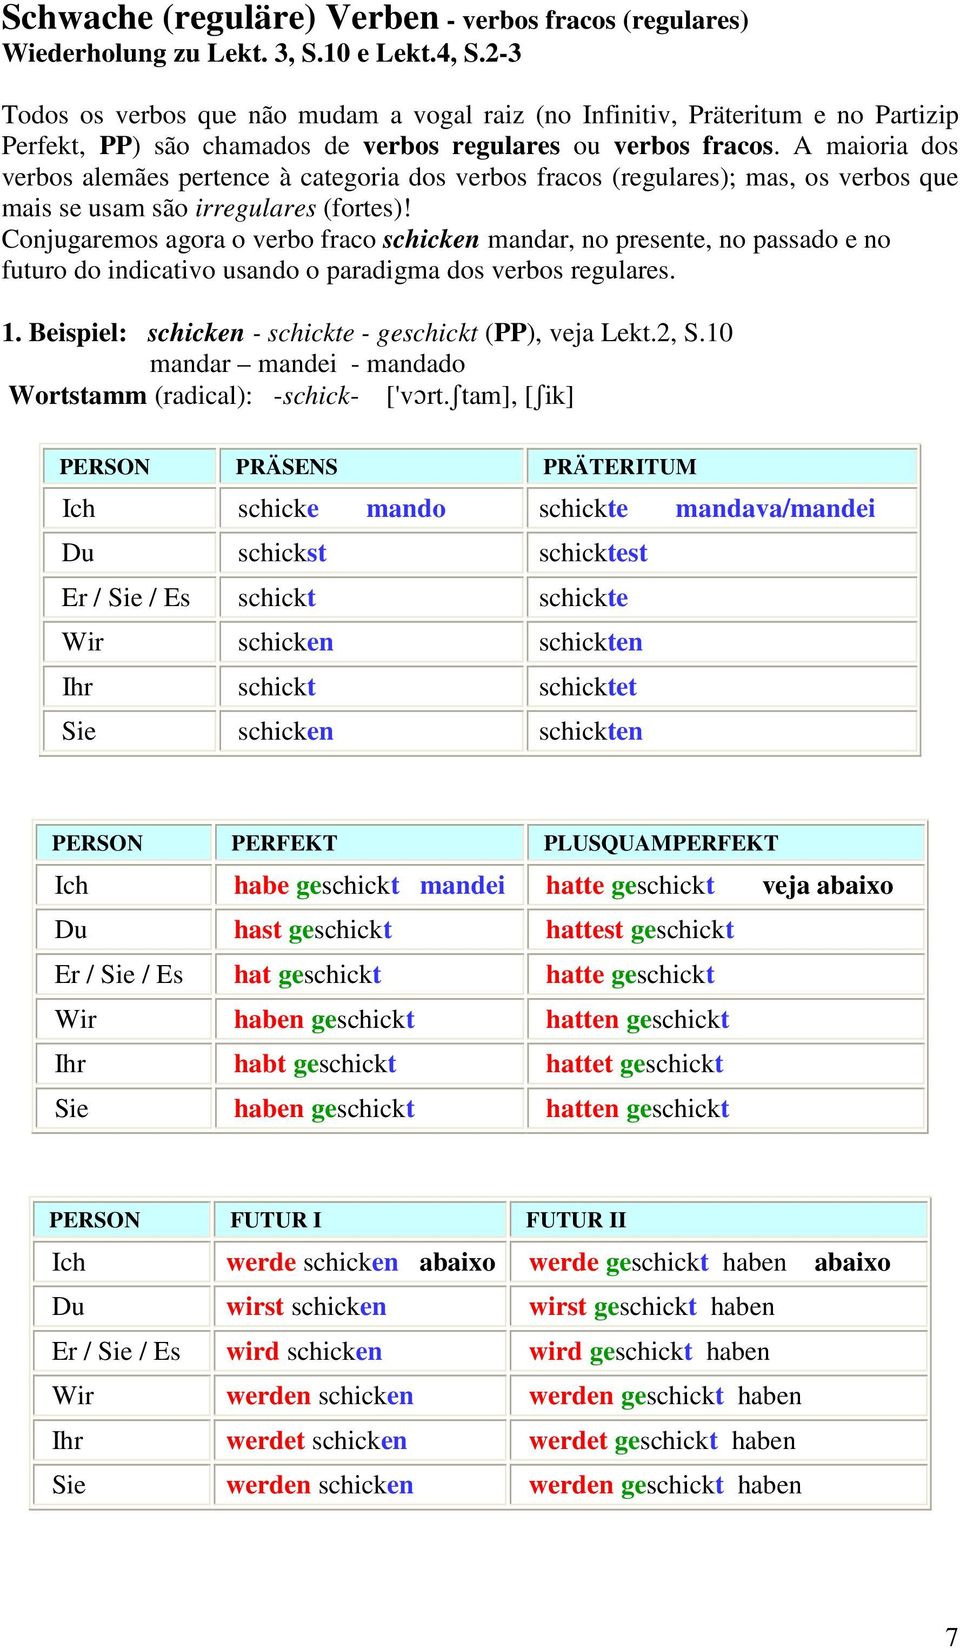 A maioria dos verbos alemães pertence à categoria dos verbos fracos (regulares); mas, os verbos que mais se usam são irregulares (fortes)!